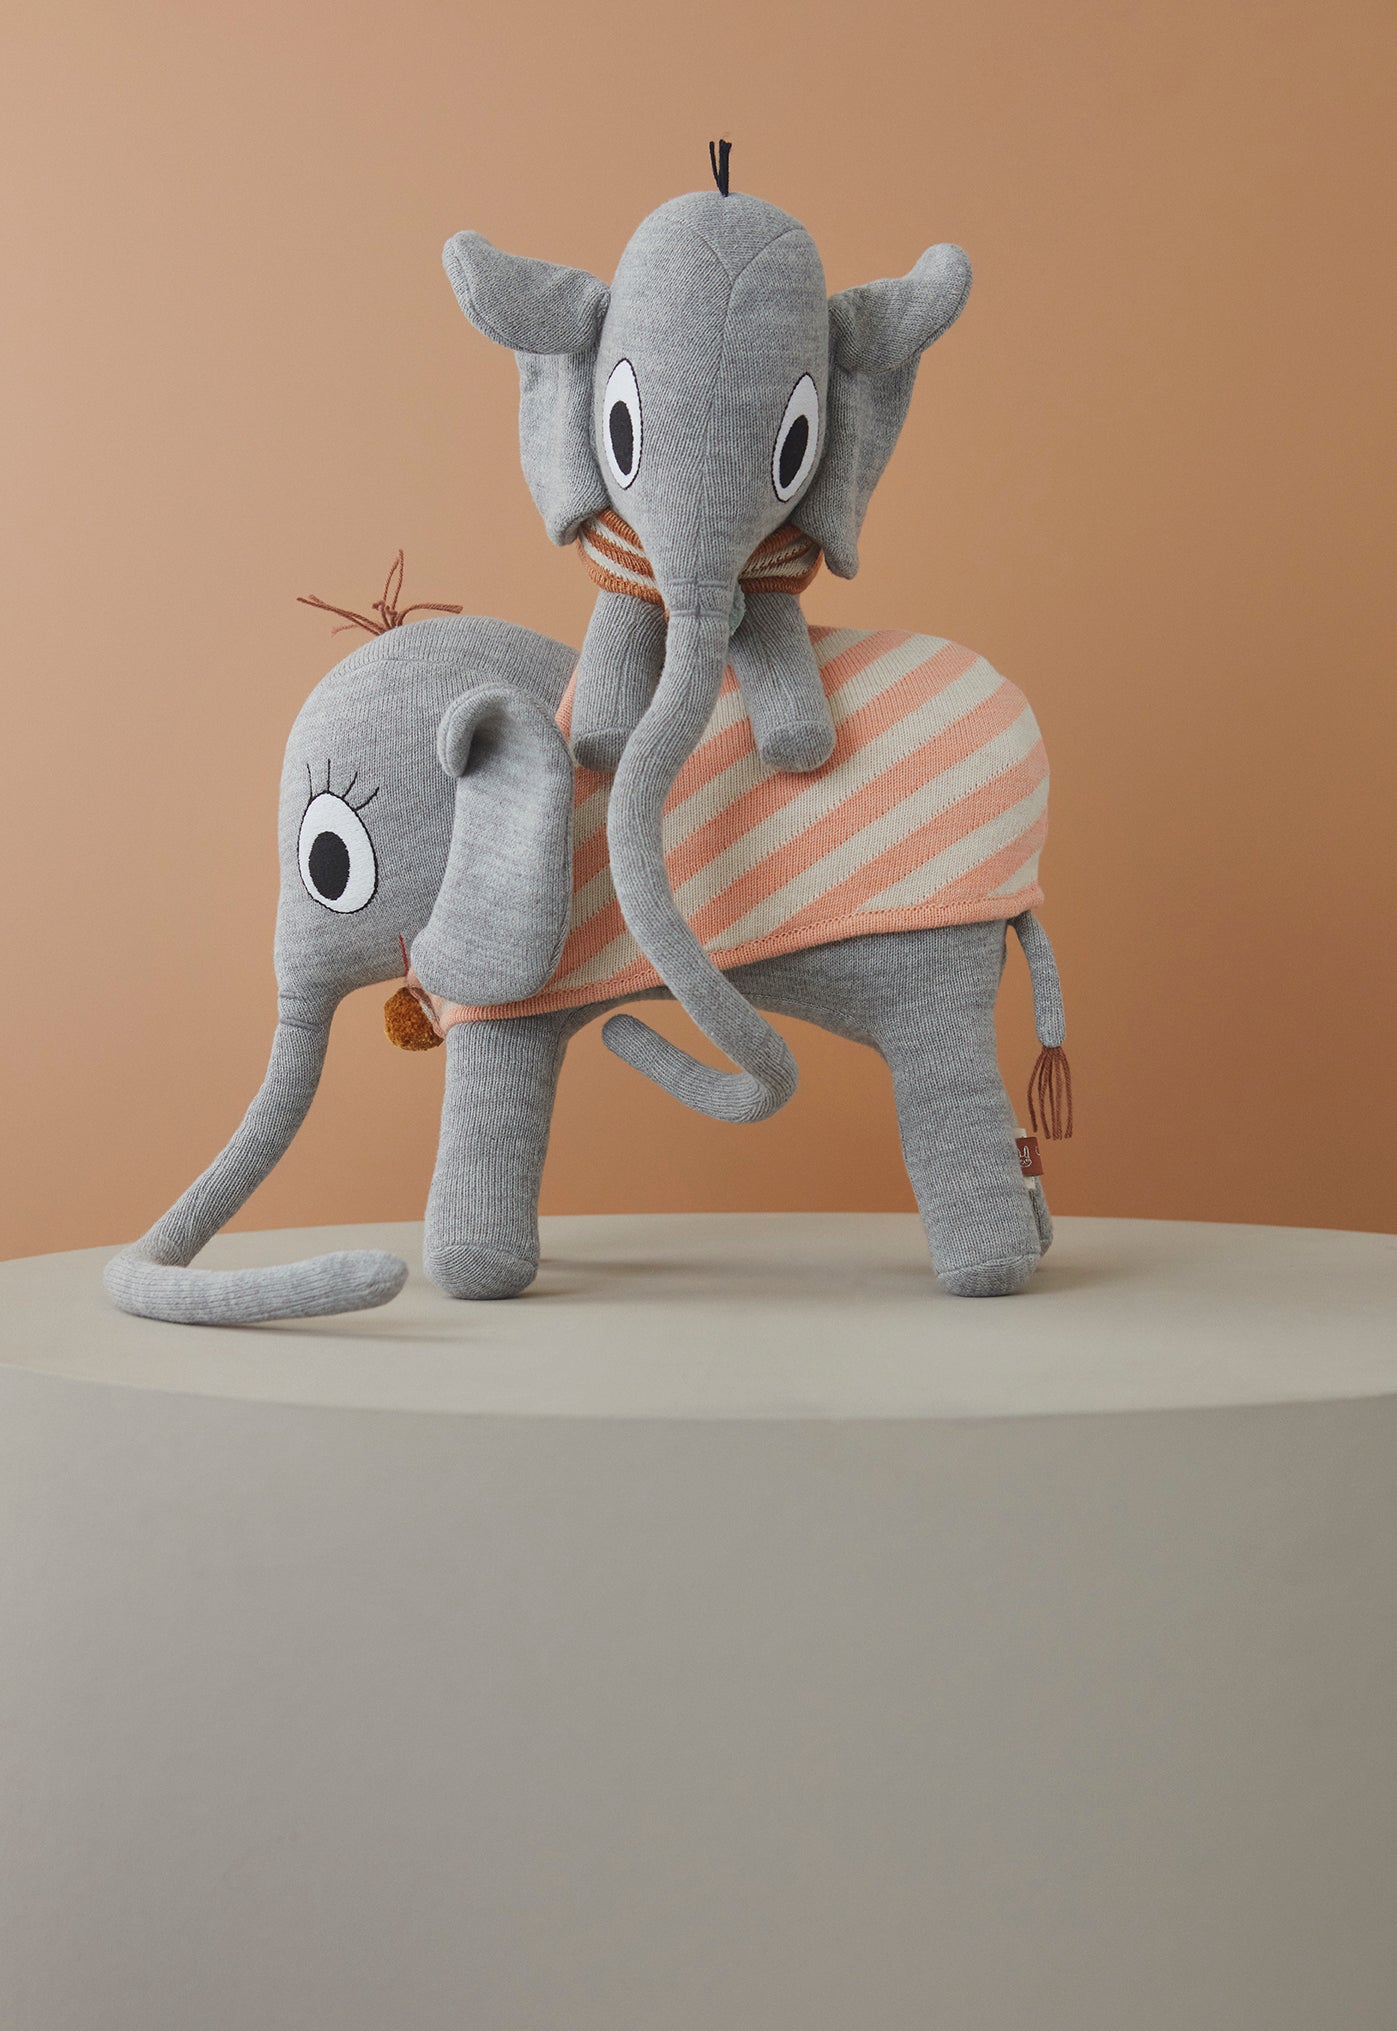 Kuscheltier "Ramboline Elephant - Grey"